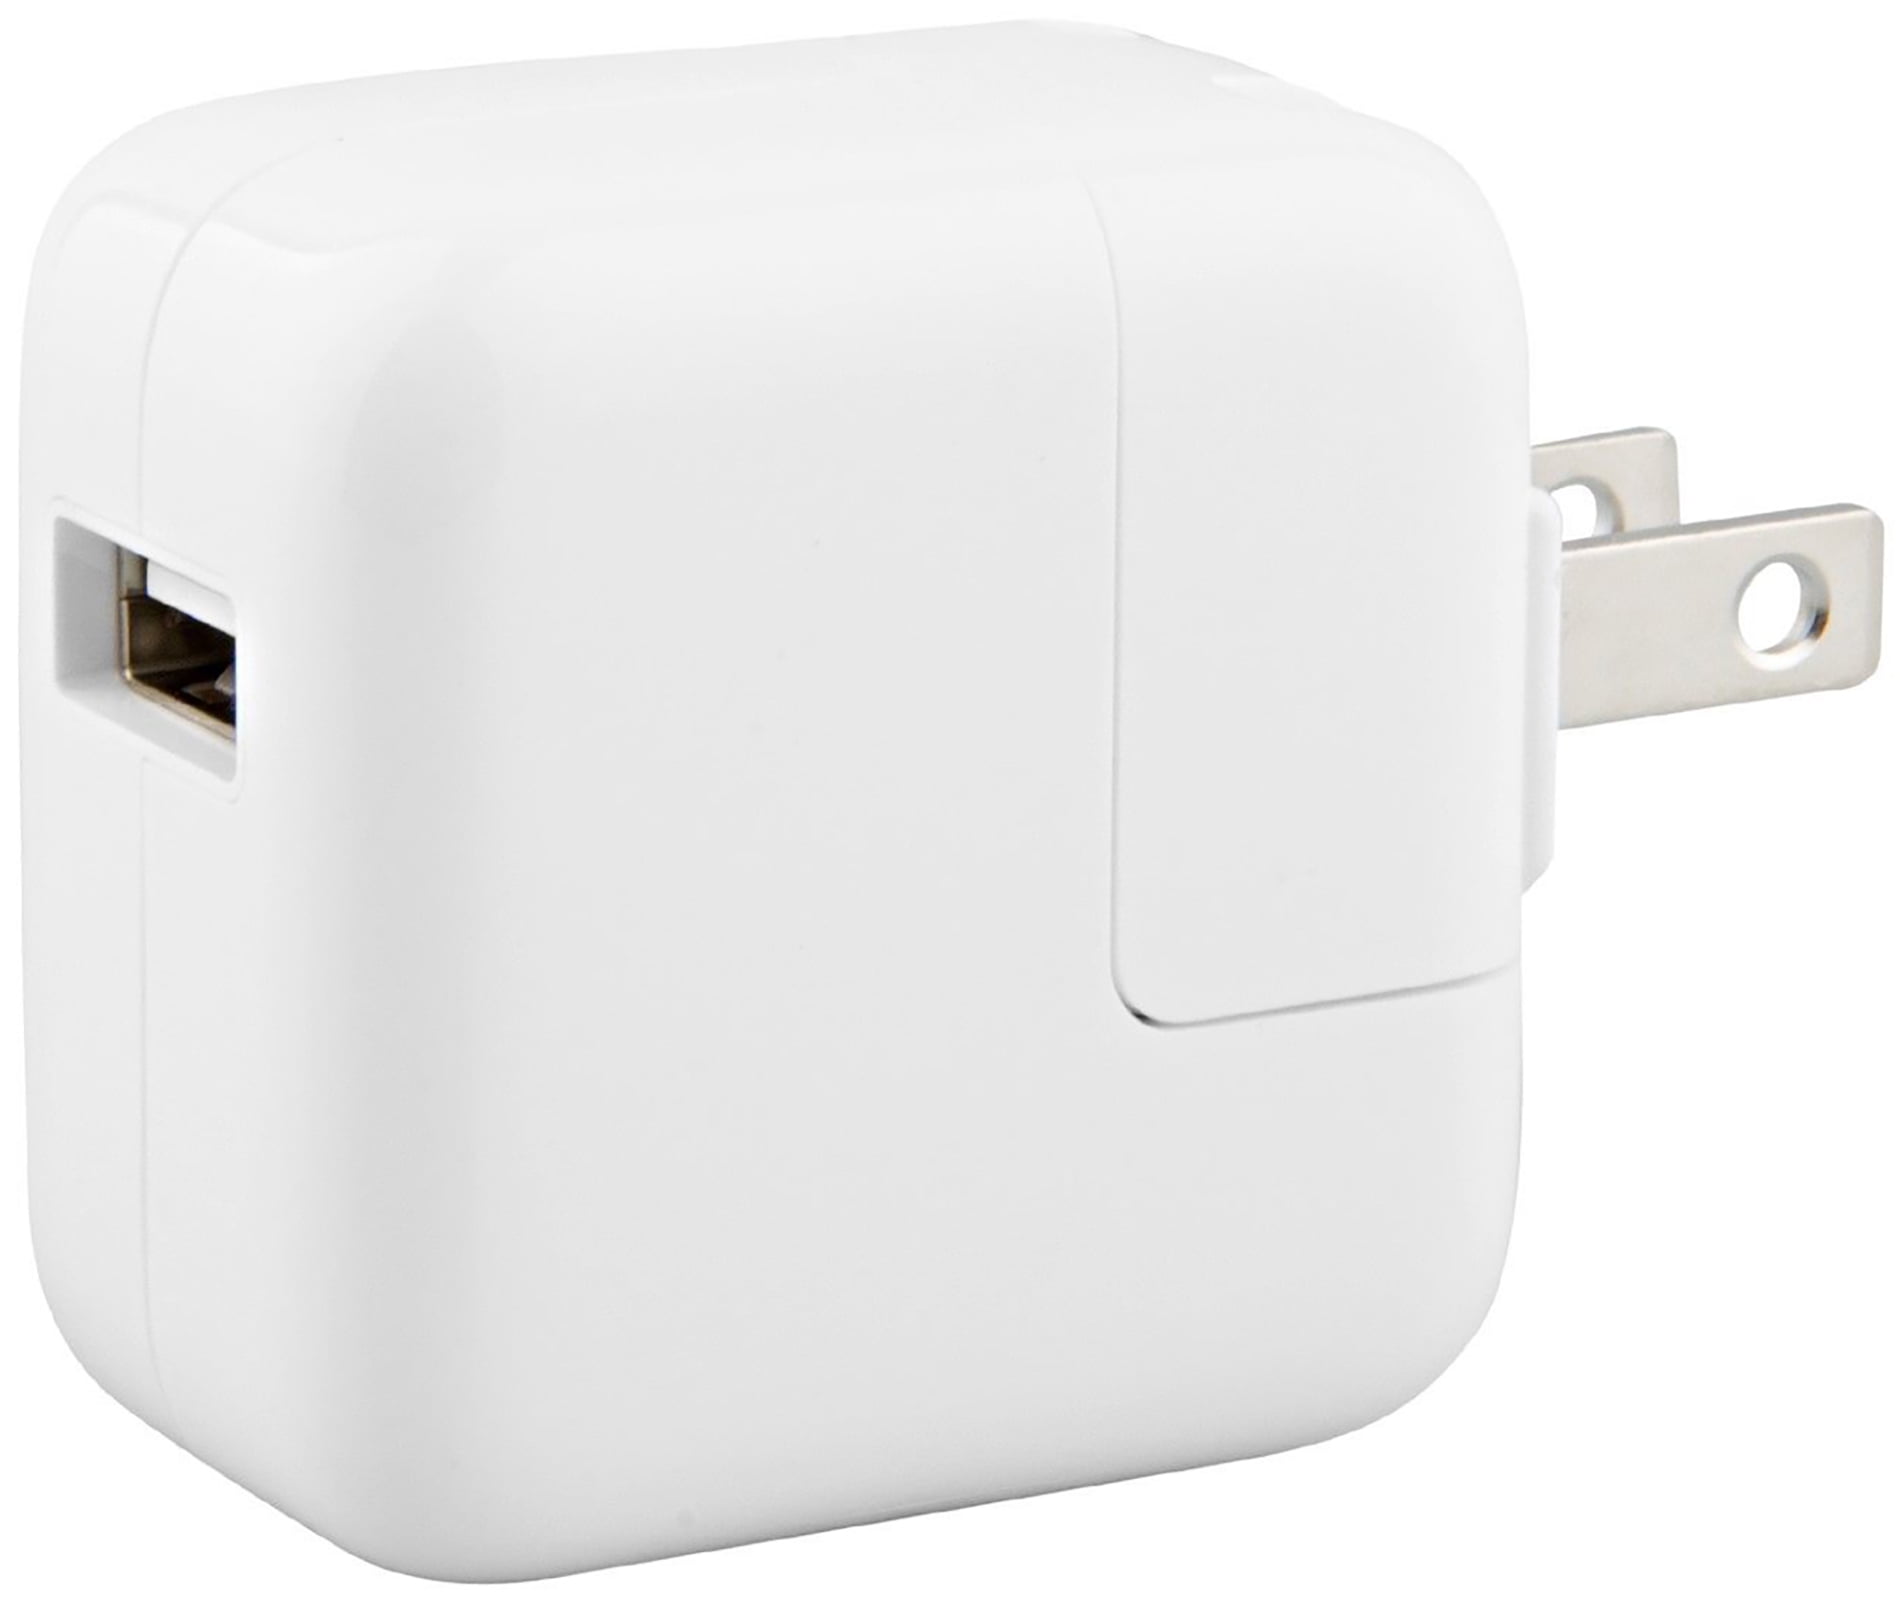 Apple 10W USB Power Adapter (Bulk Packaging) Walmart.com